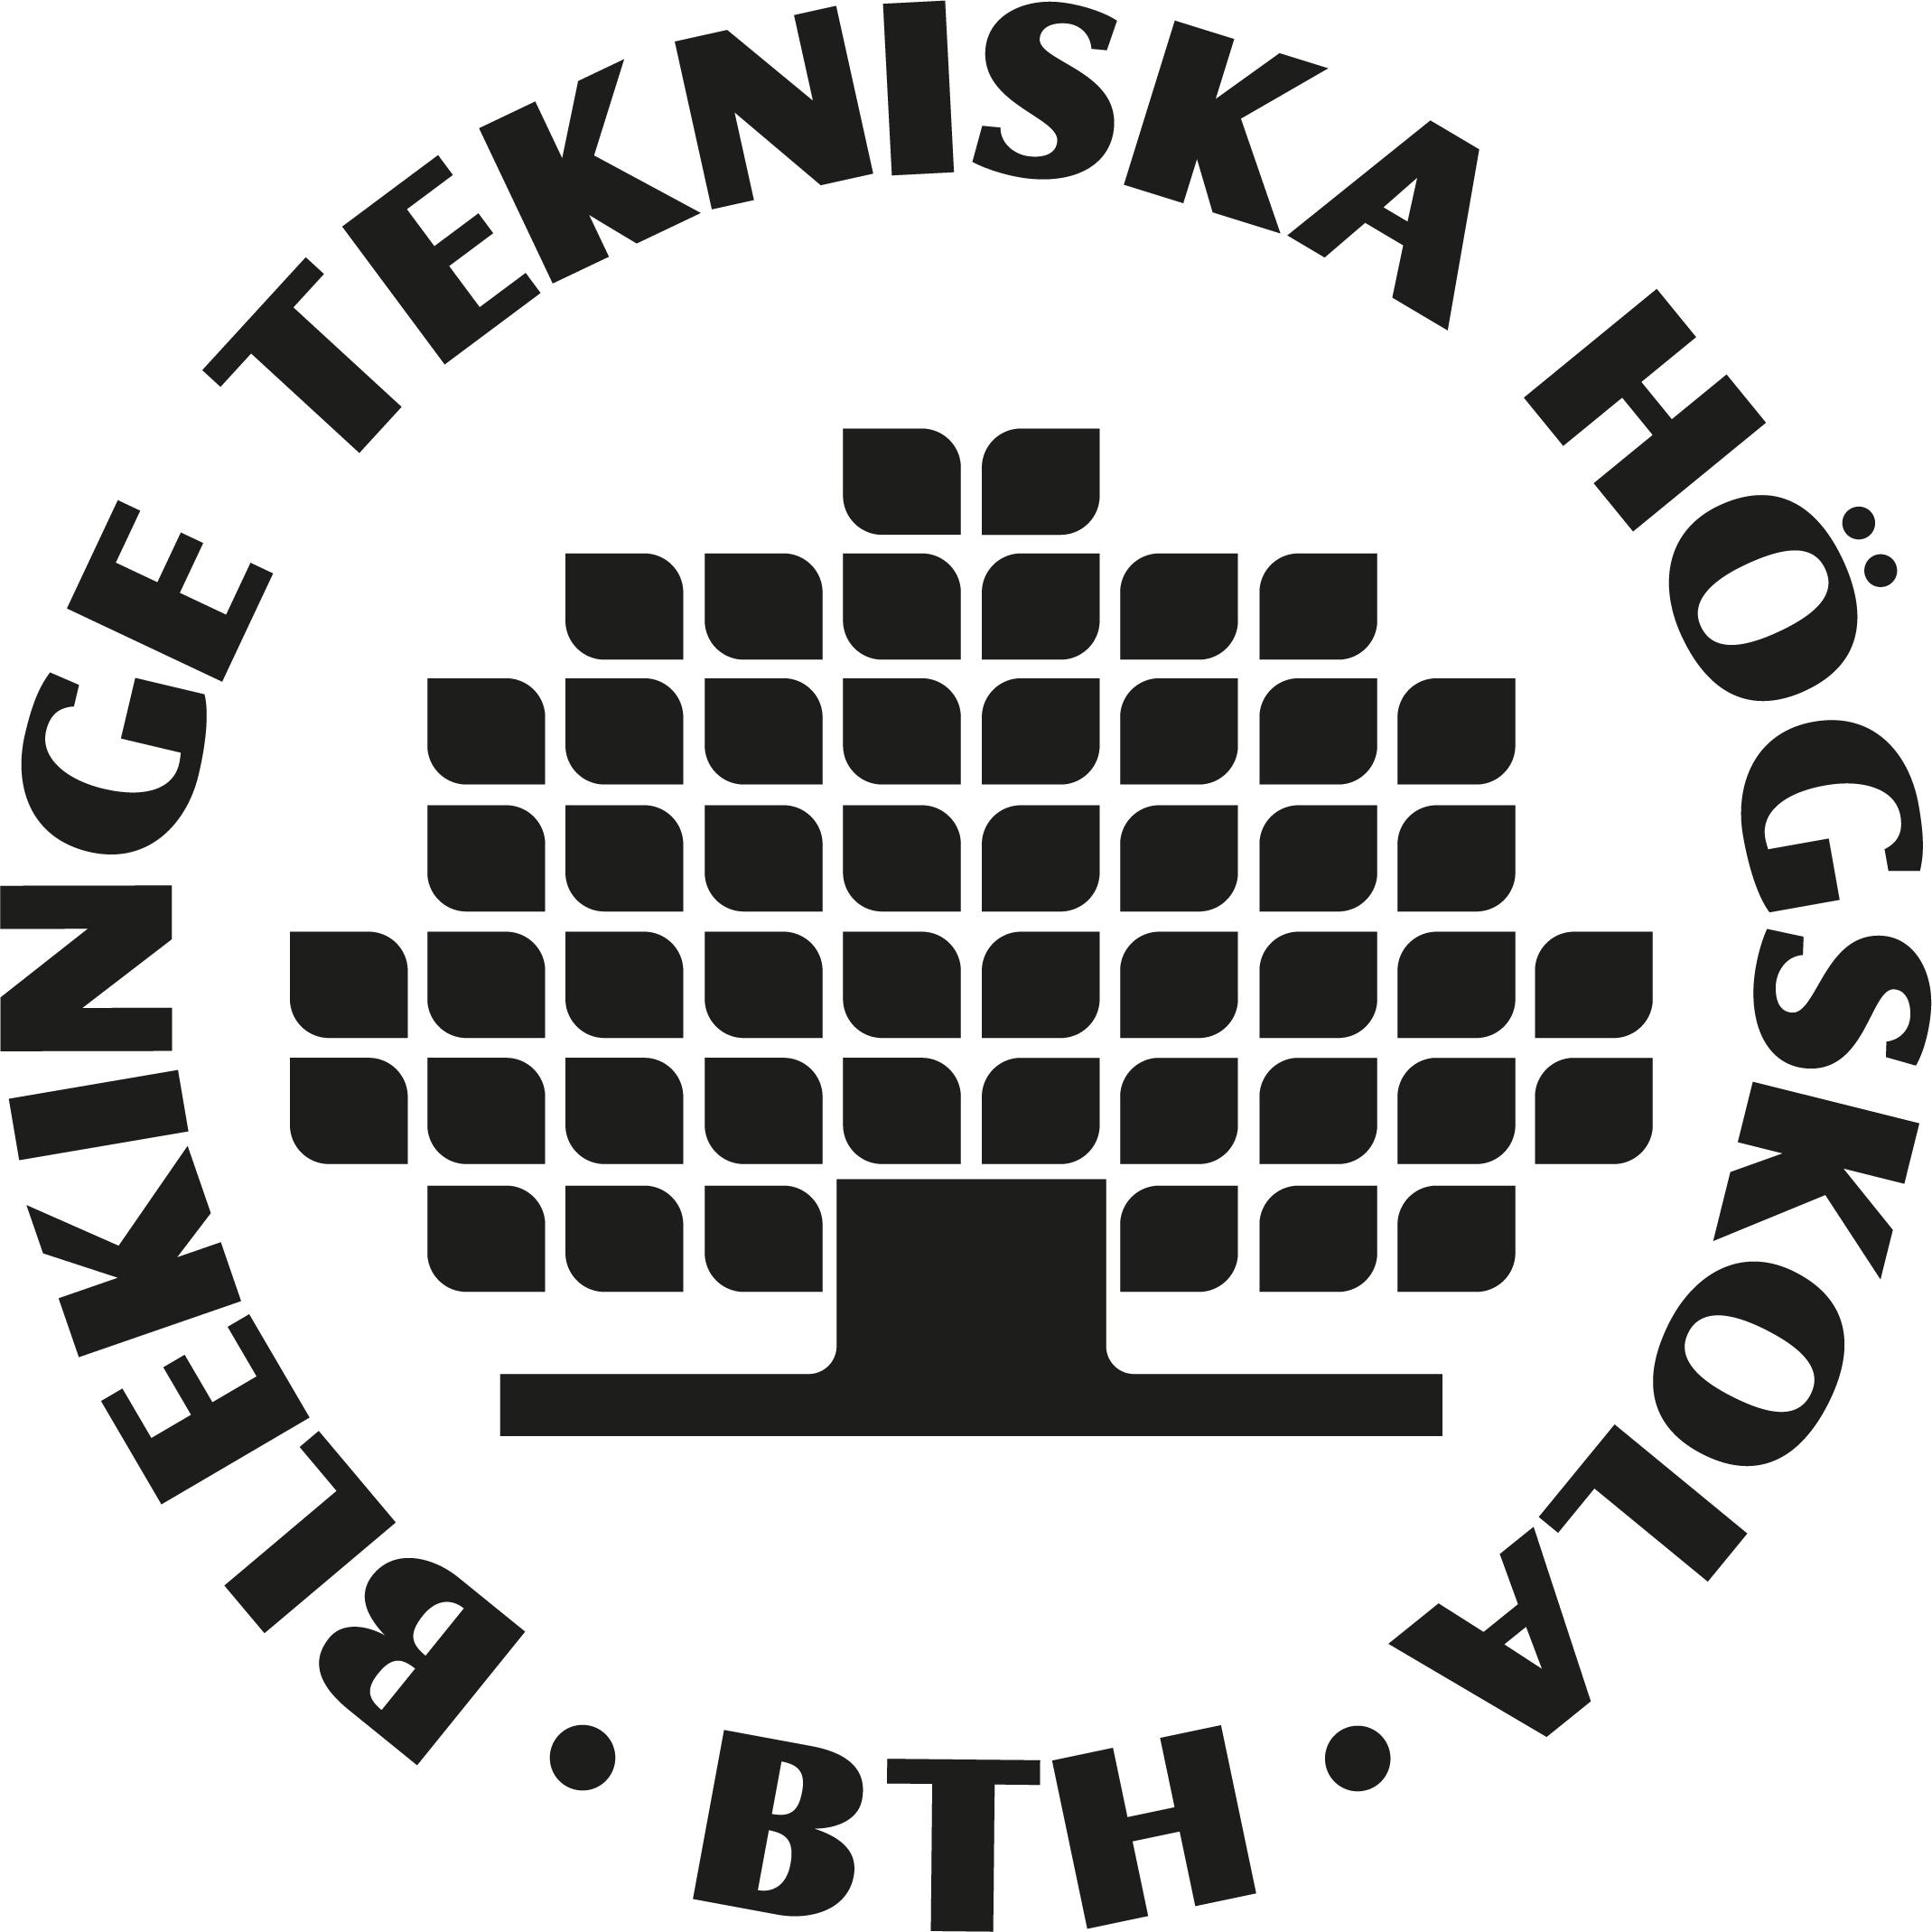   Blekinge Institute of Technology logo